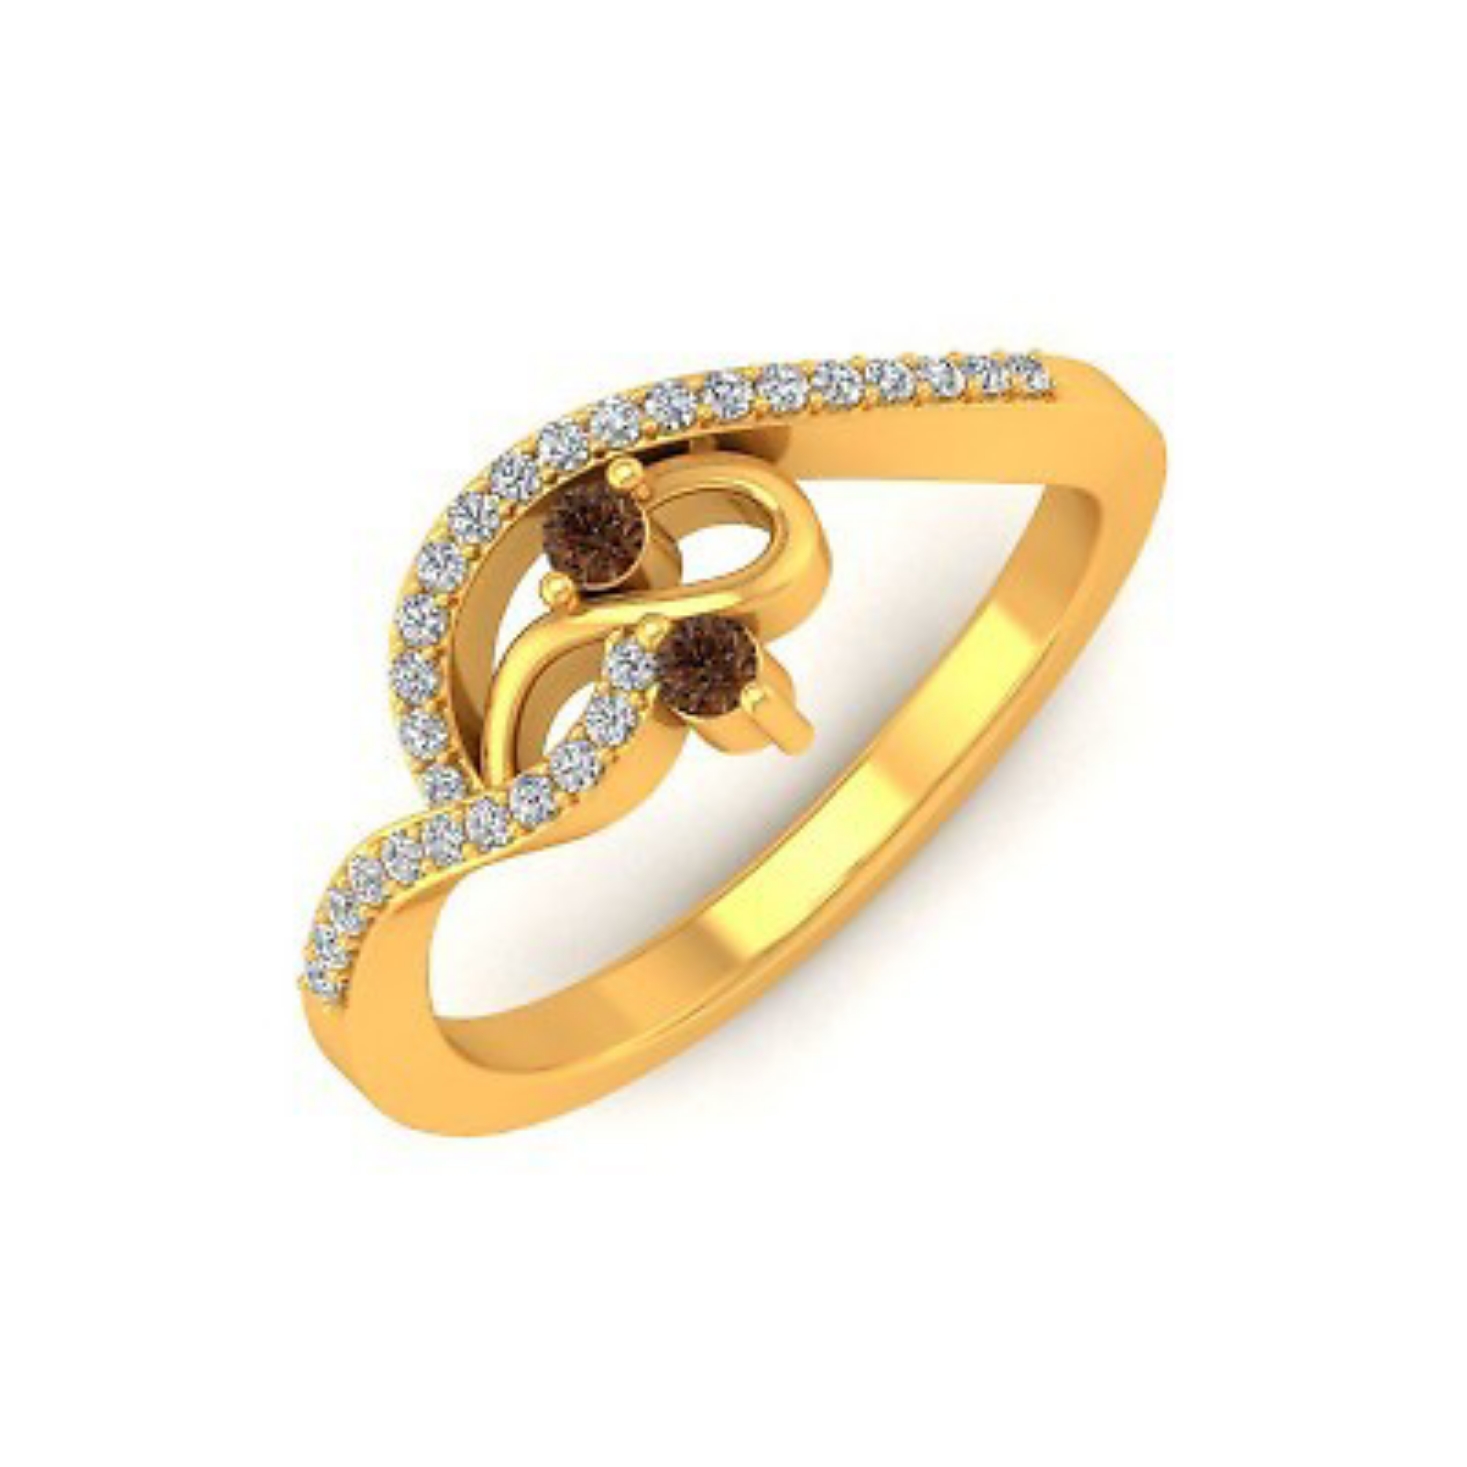 আংটি ডিজাইন ছবি  - ছেলে মেয়েদের সোনার আংটি ডিজাইন । রিং আংটি ডিজাইন  - Gold ring designs for girls - NeotericIT.com